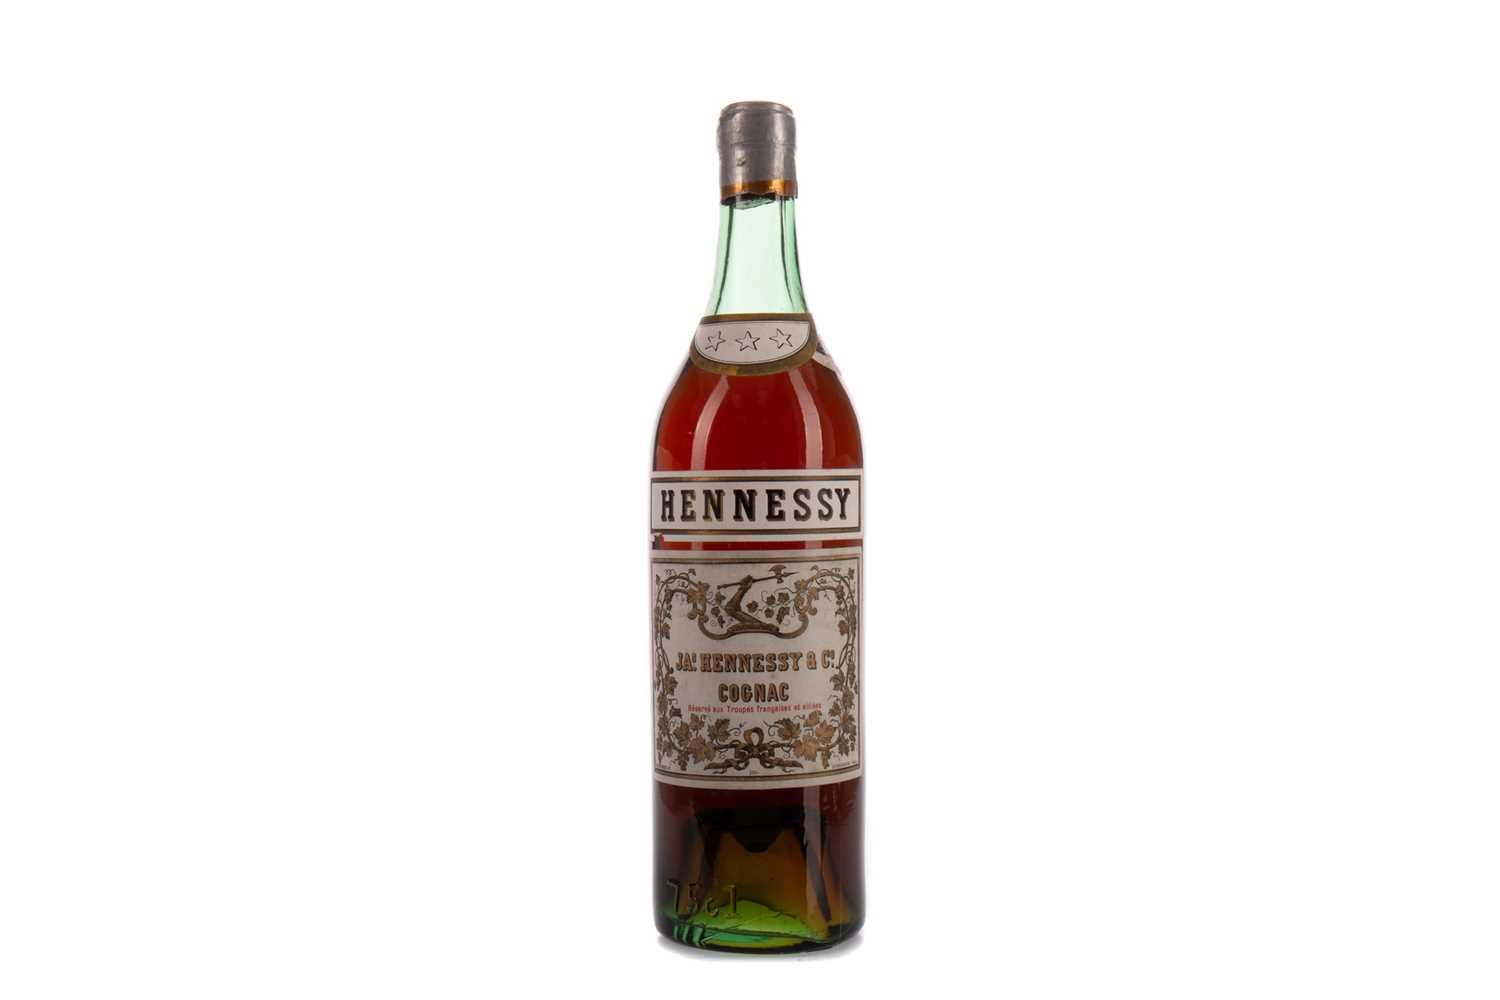 Hennessy Cognac 3 Star